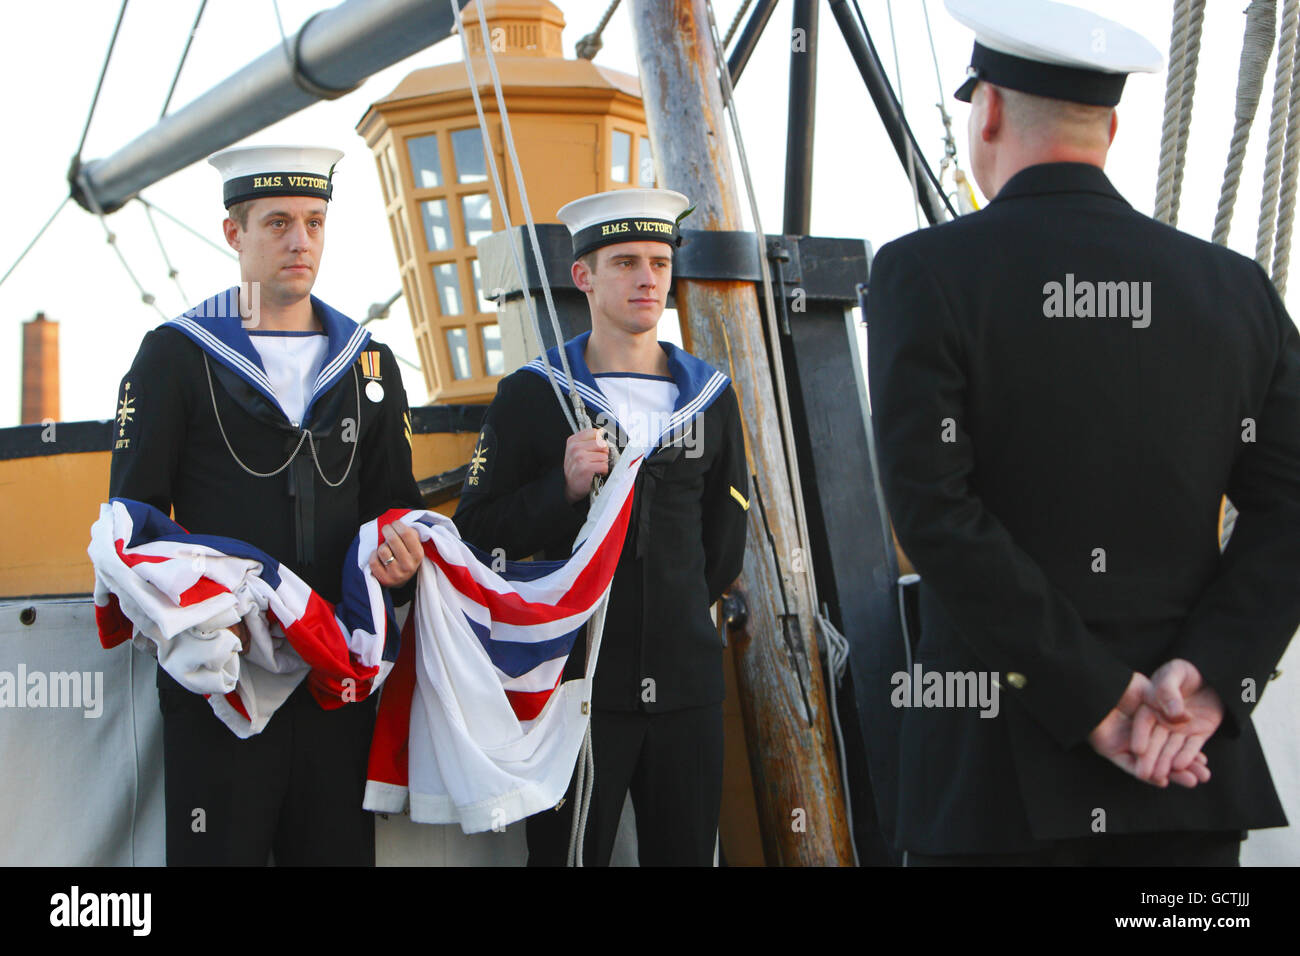 Dos Clasificaciones esperan para levantar el letrero blanco en la popa del HMS Victory en Portsmouth por la mañana 'señales', un ritual diario que todos los vasos y bases llevan a cabo simultáneamente cada mañana y noche. Foto de stock